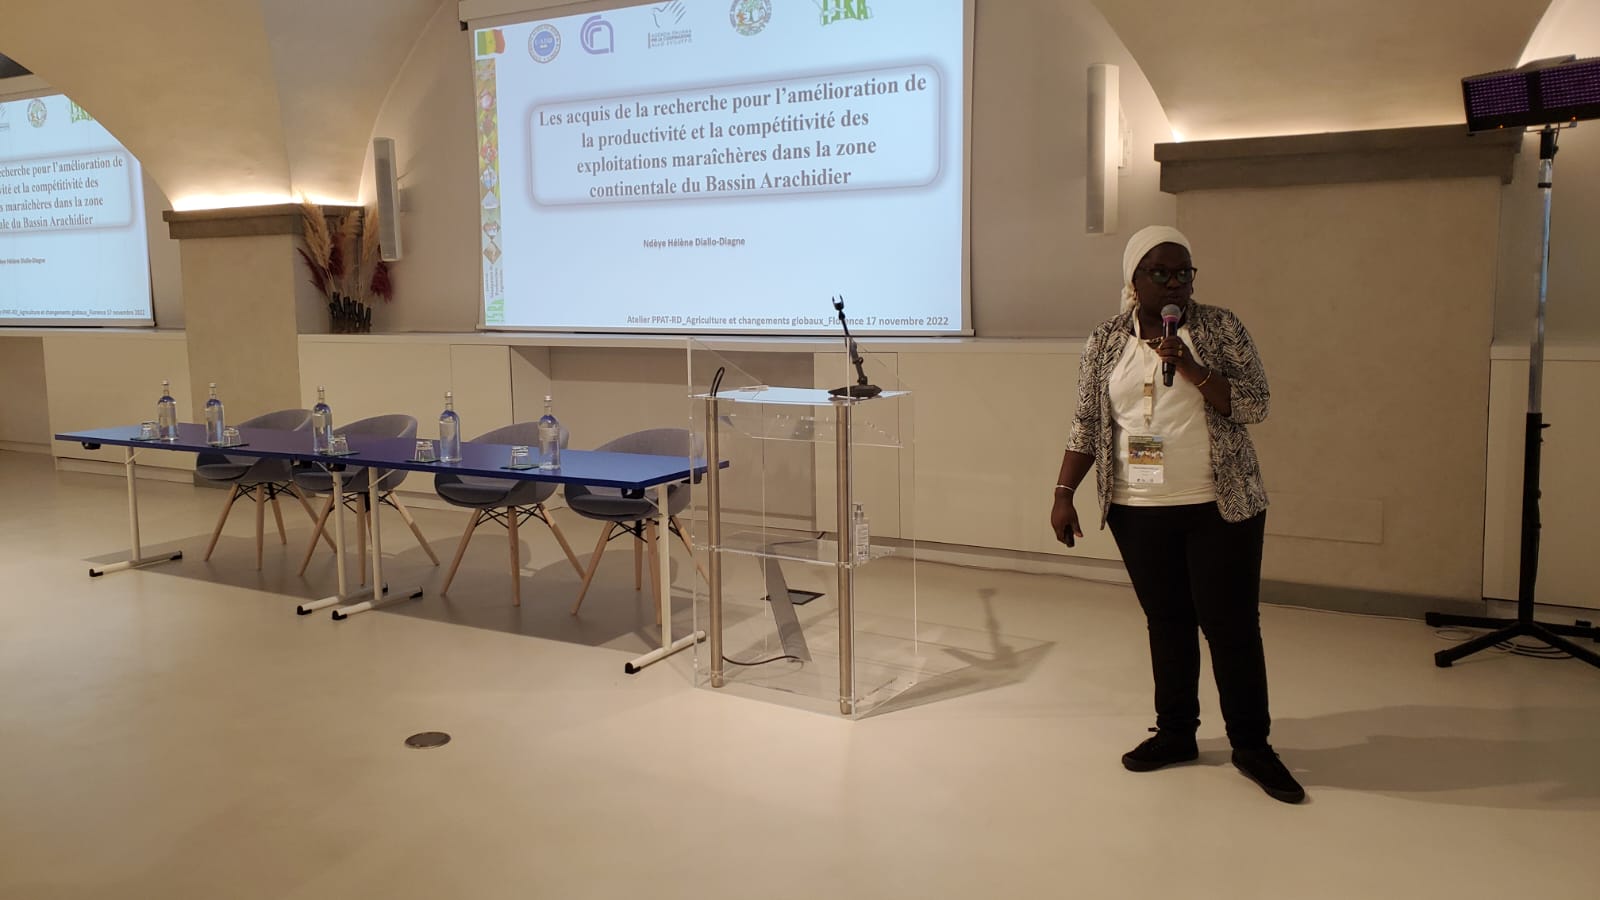 Le SP Centre : Résultats des activités de recherche agronomique (Ndeye Hélène Diallo, ISRA-CDH)